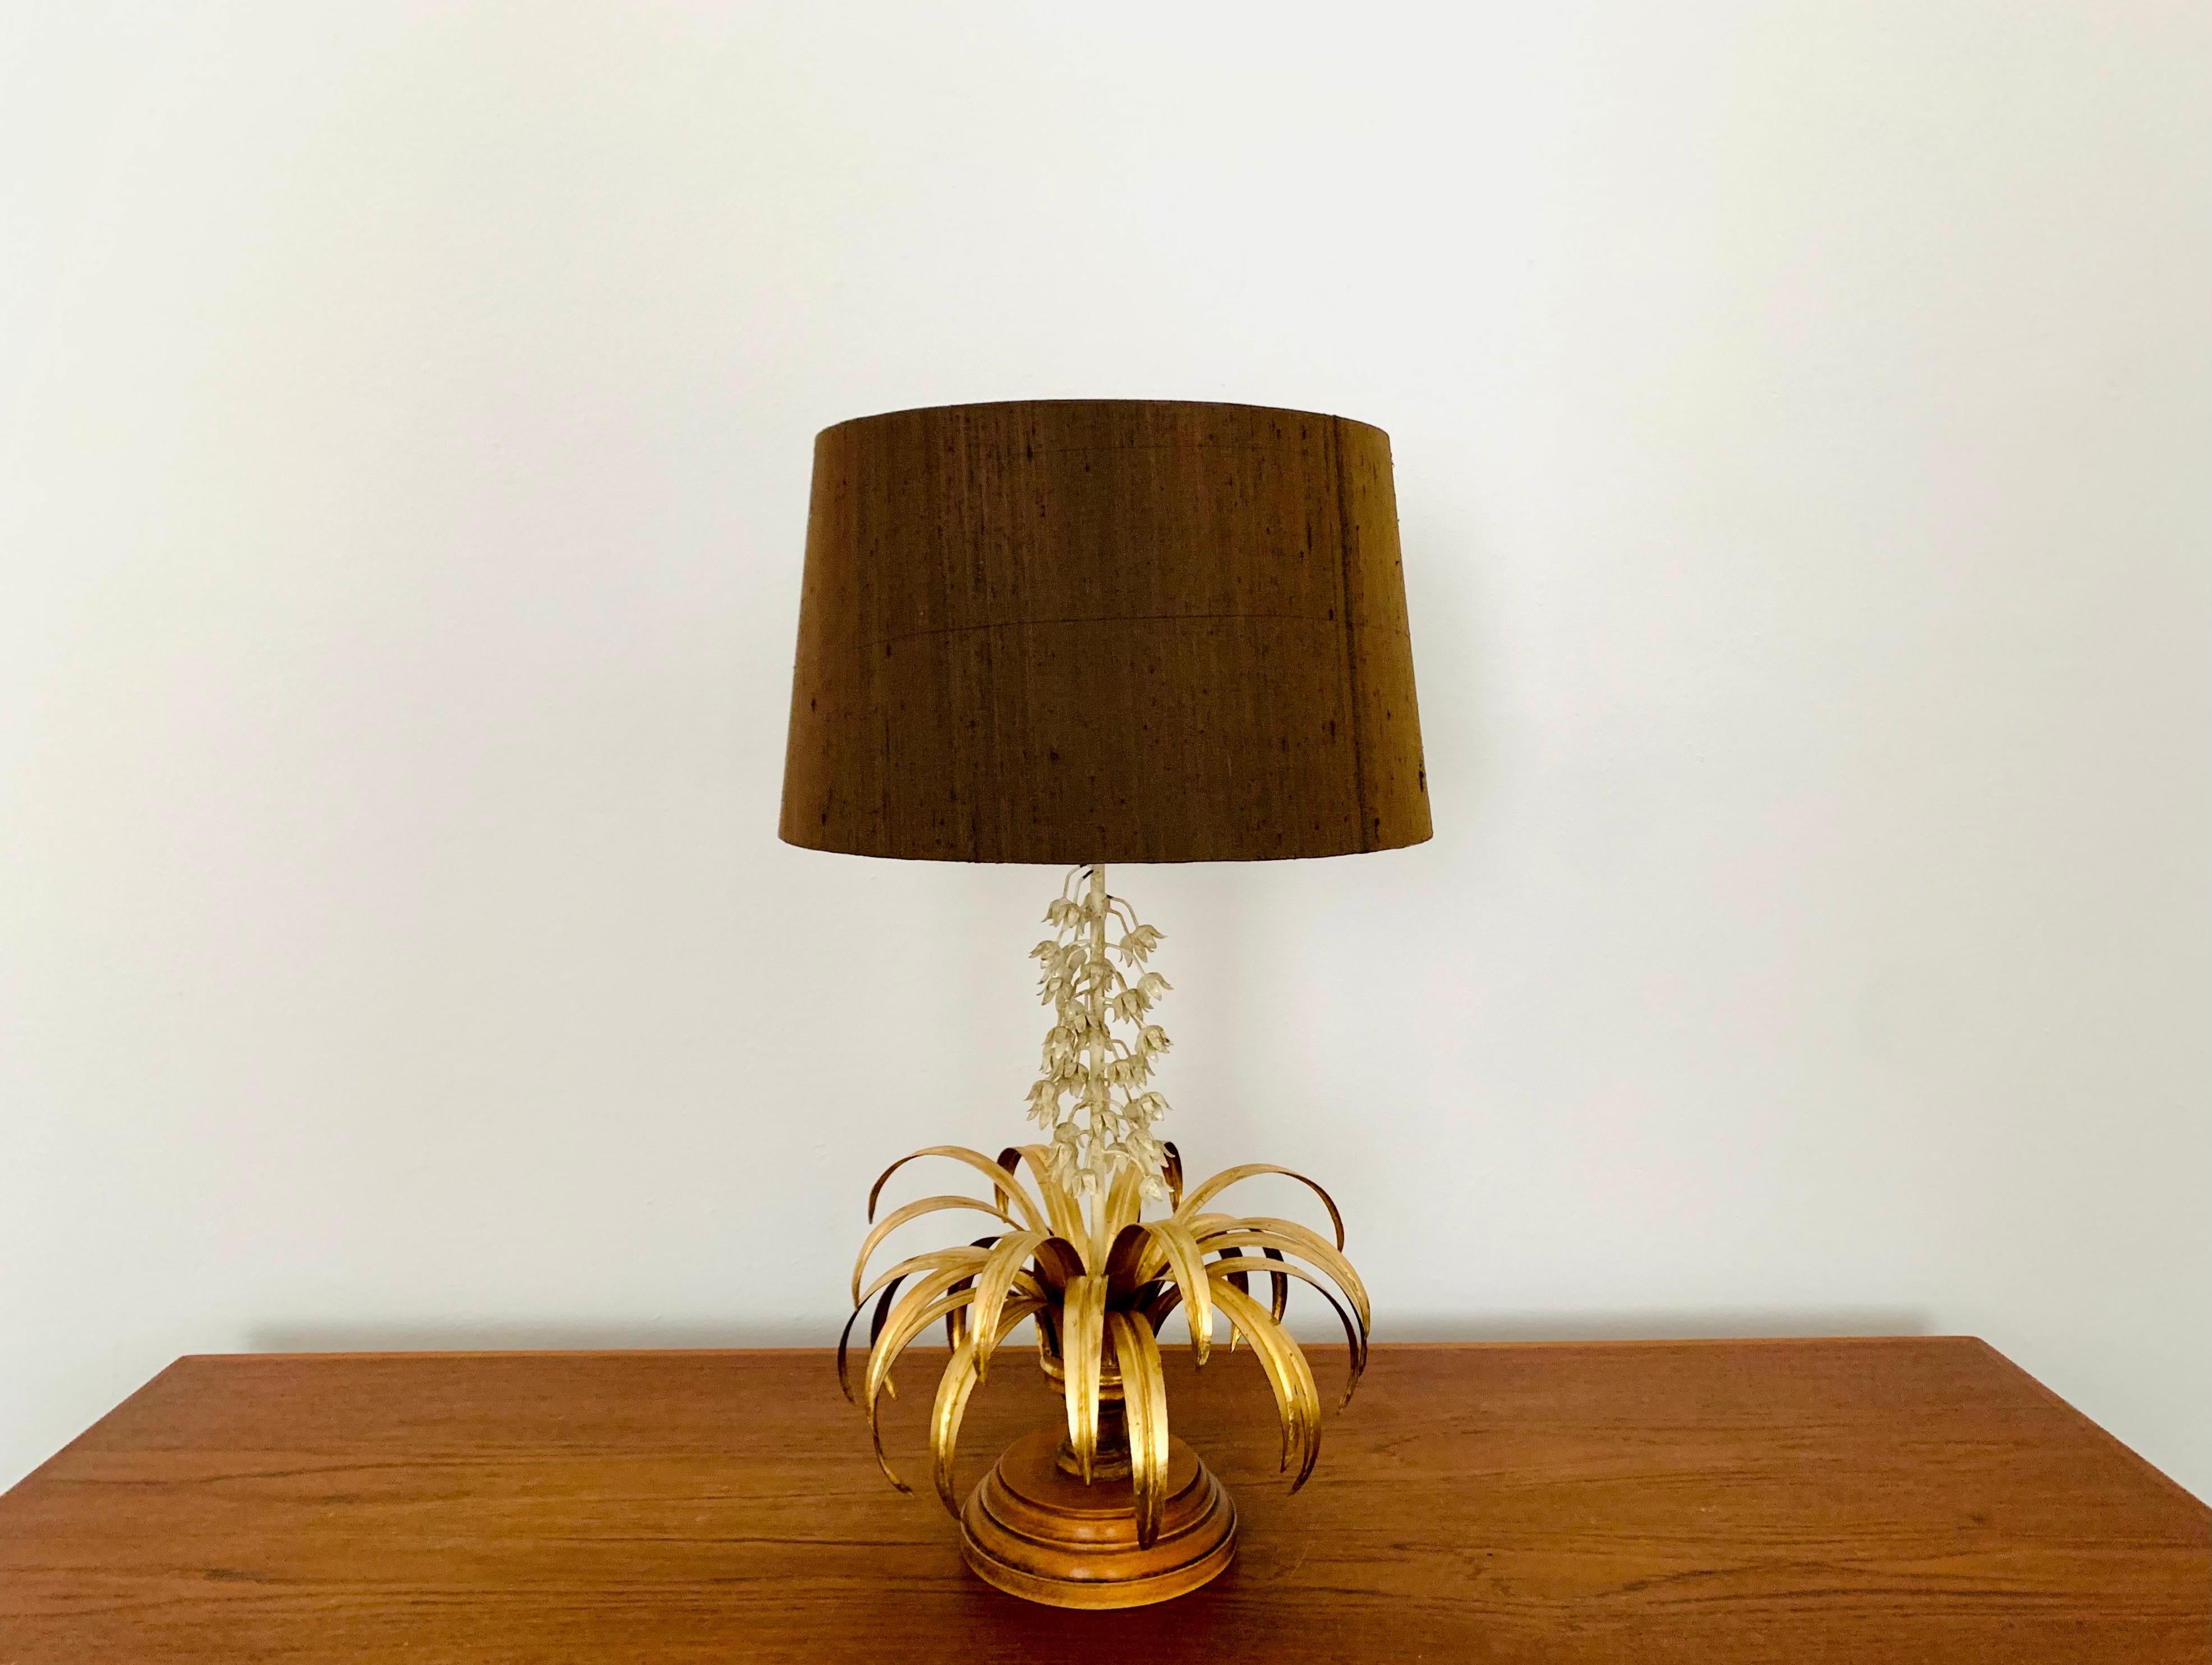 Très belle lampe de table dorée de Hans Kögl datant des années 1970.
Un design remarquable et une fabrication de haute qualité.
Une merveilleuse lumière se dégage.

Condit :

Très bon état vintage avec de légers signes d'usure correspondant à